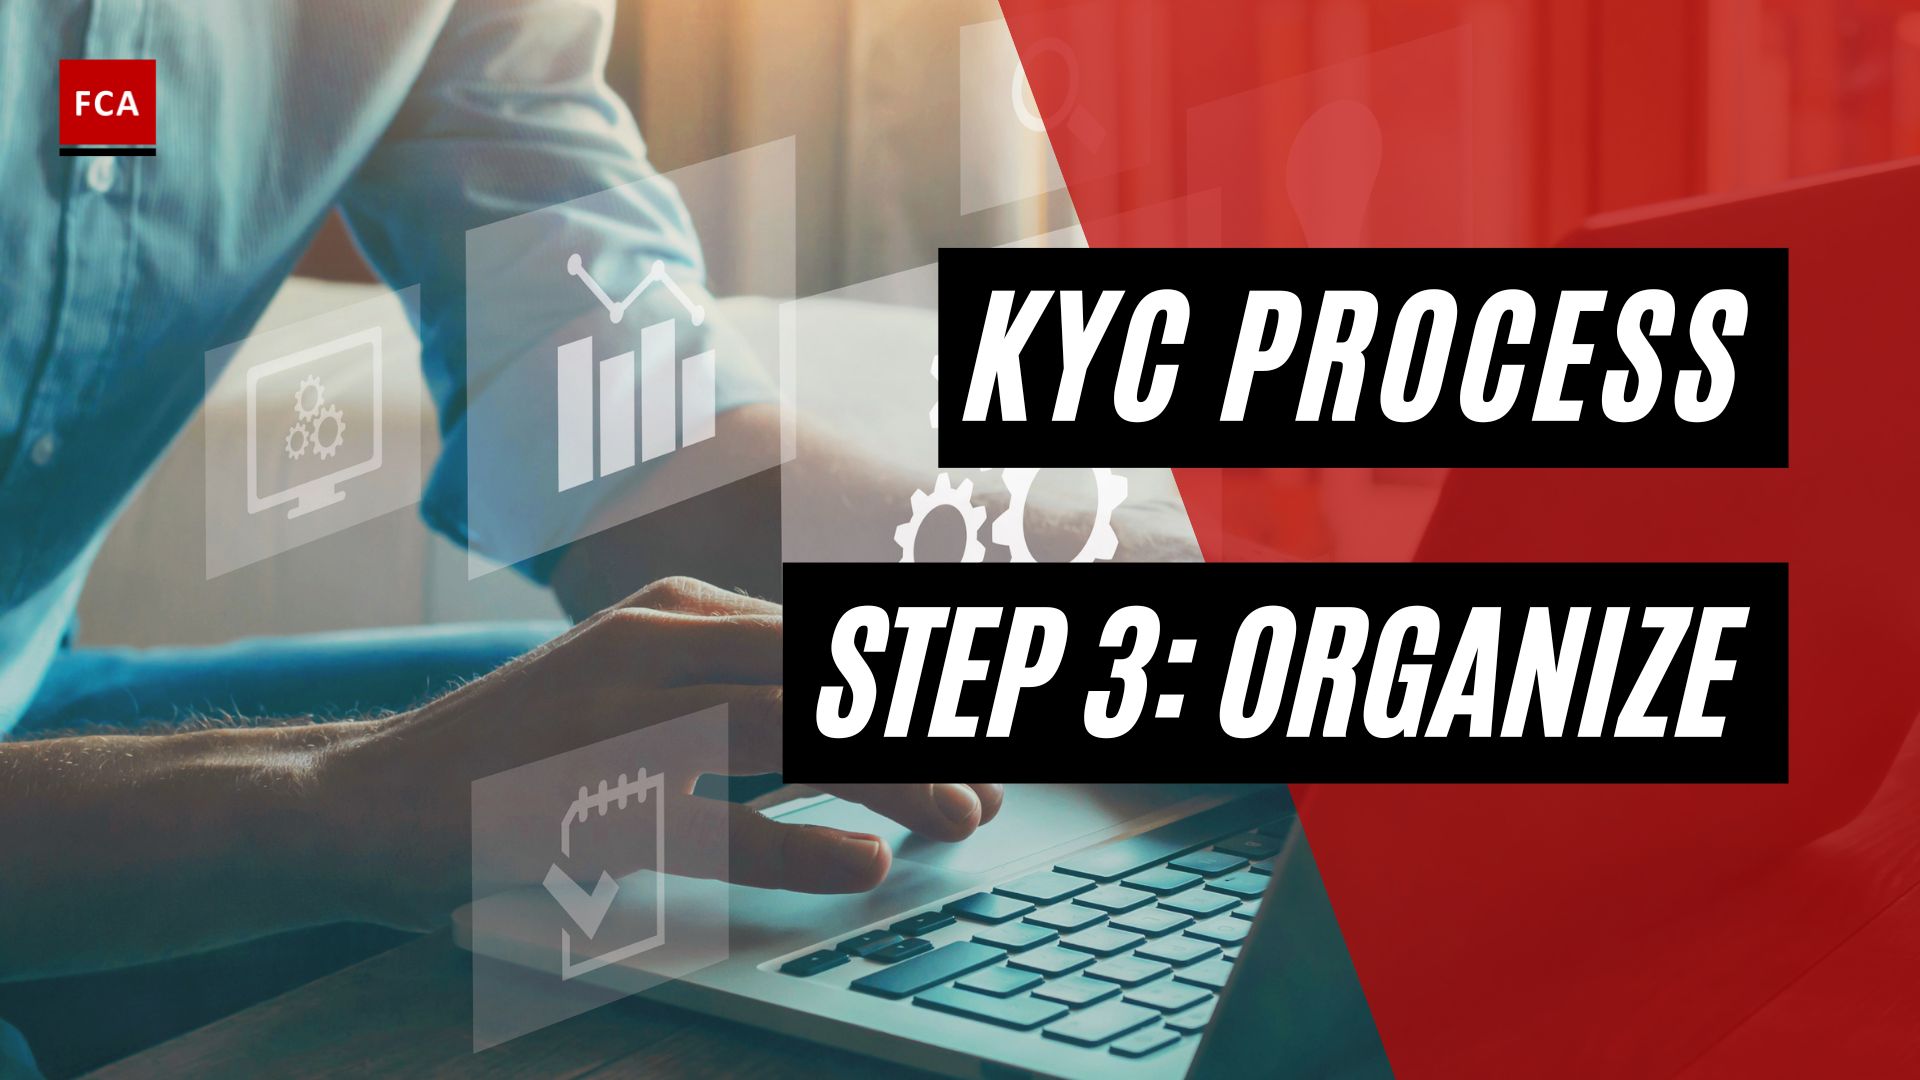 Kyc Process Step 3